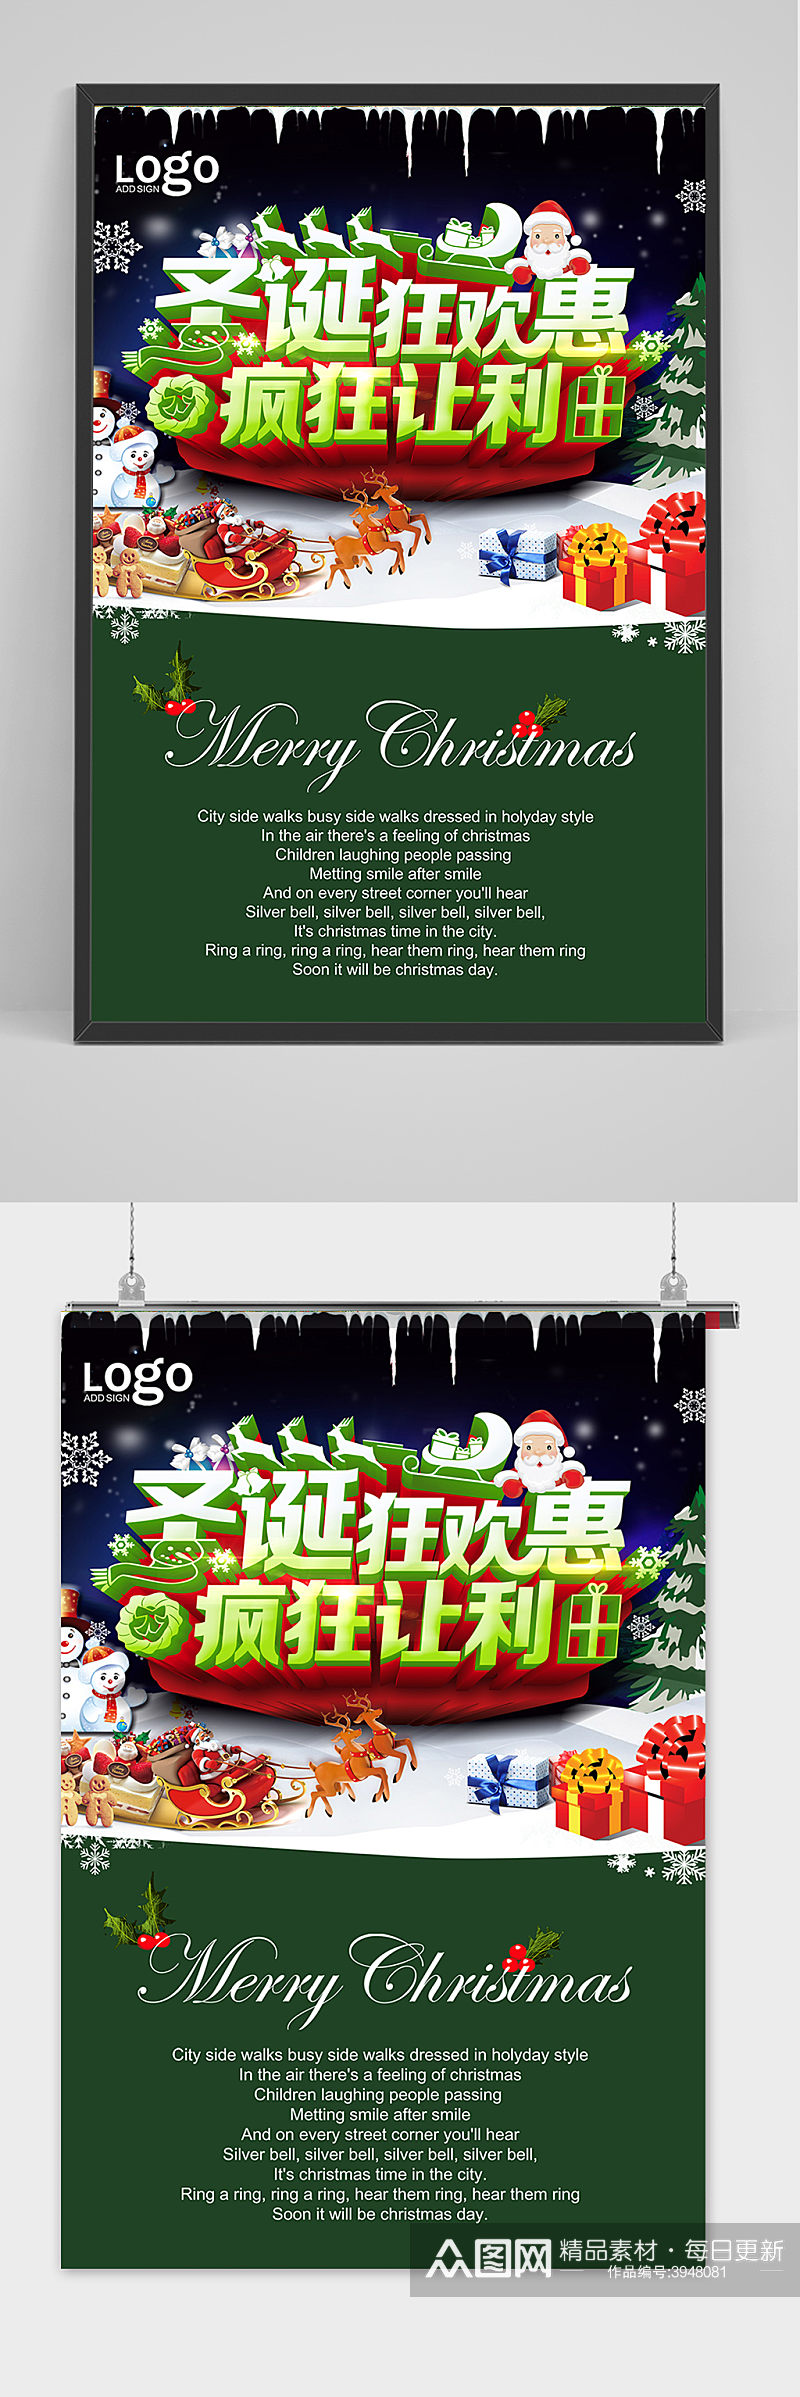 大气绿色清新圣诞节宣传海报素材